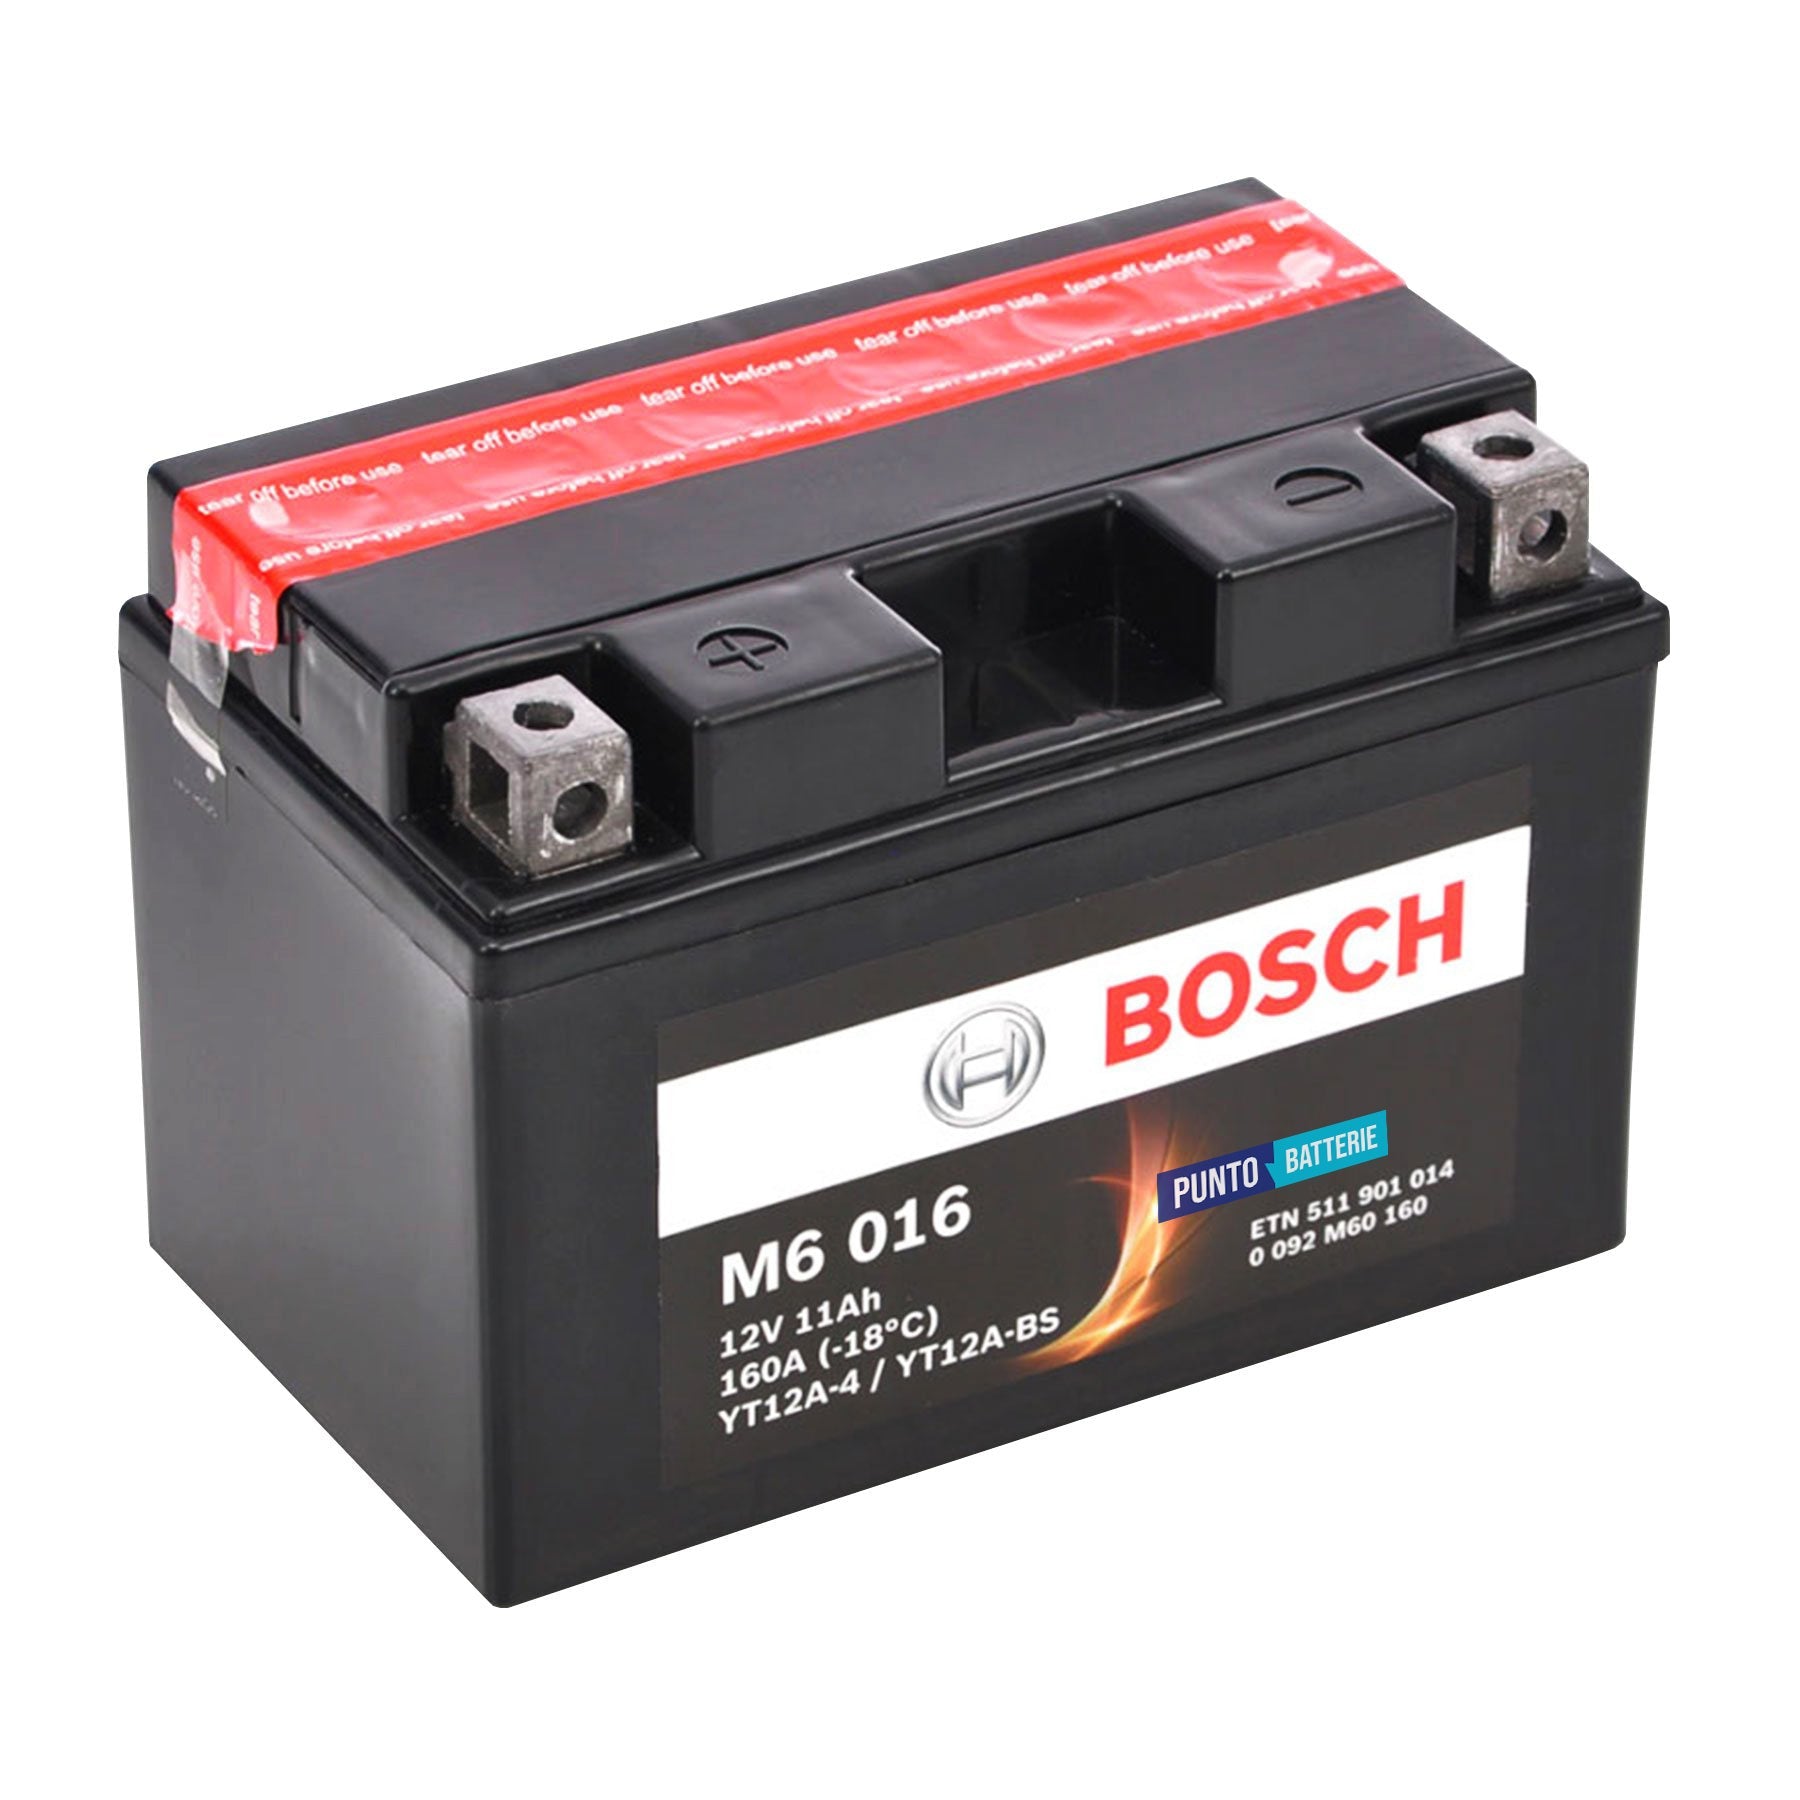 Batteria originale Bosch M6 M6016, dimensioni 150 x 87 x 105, pol